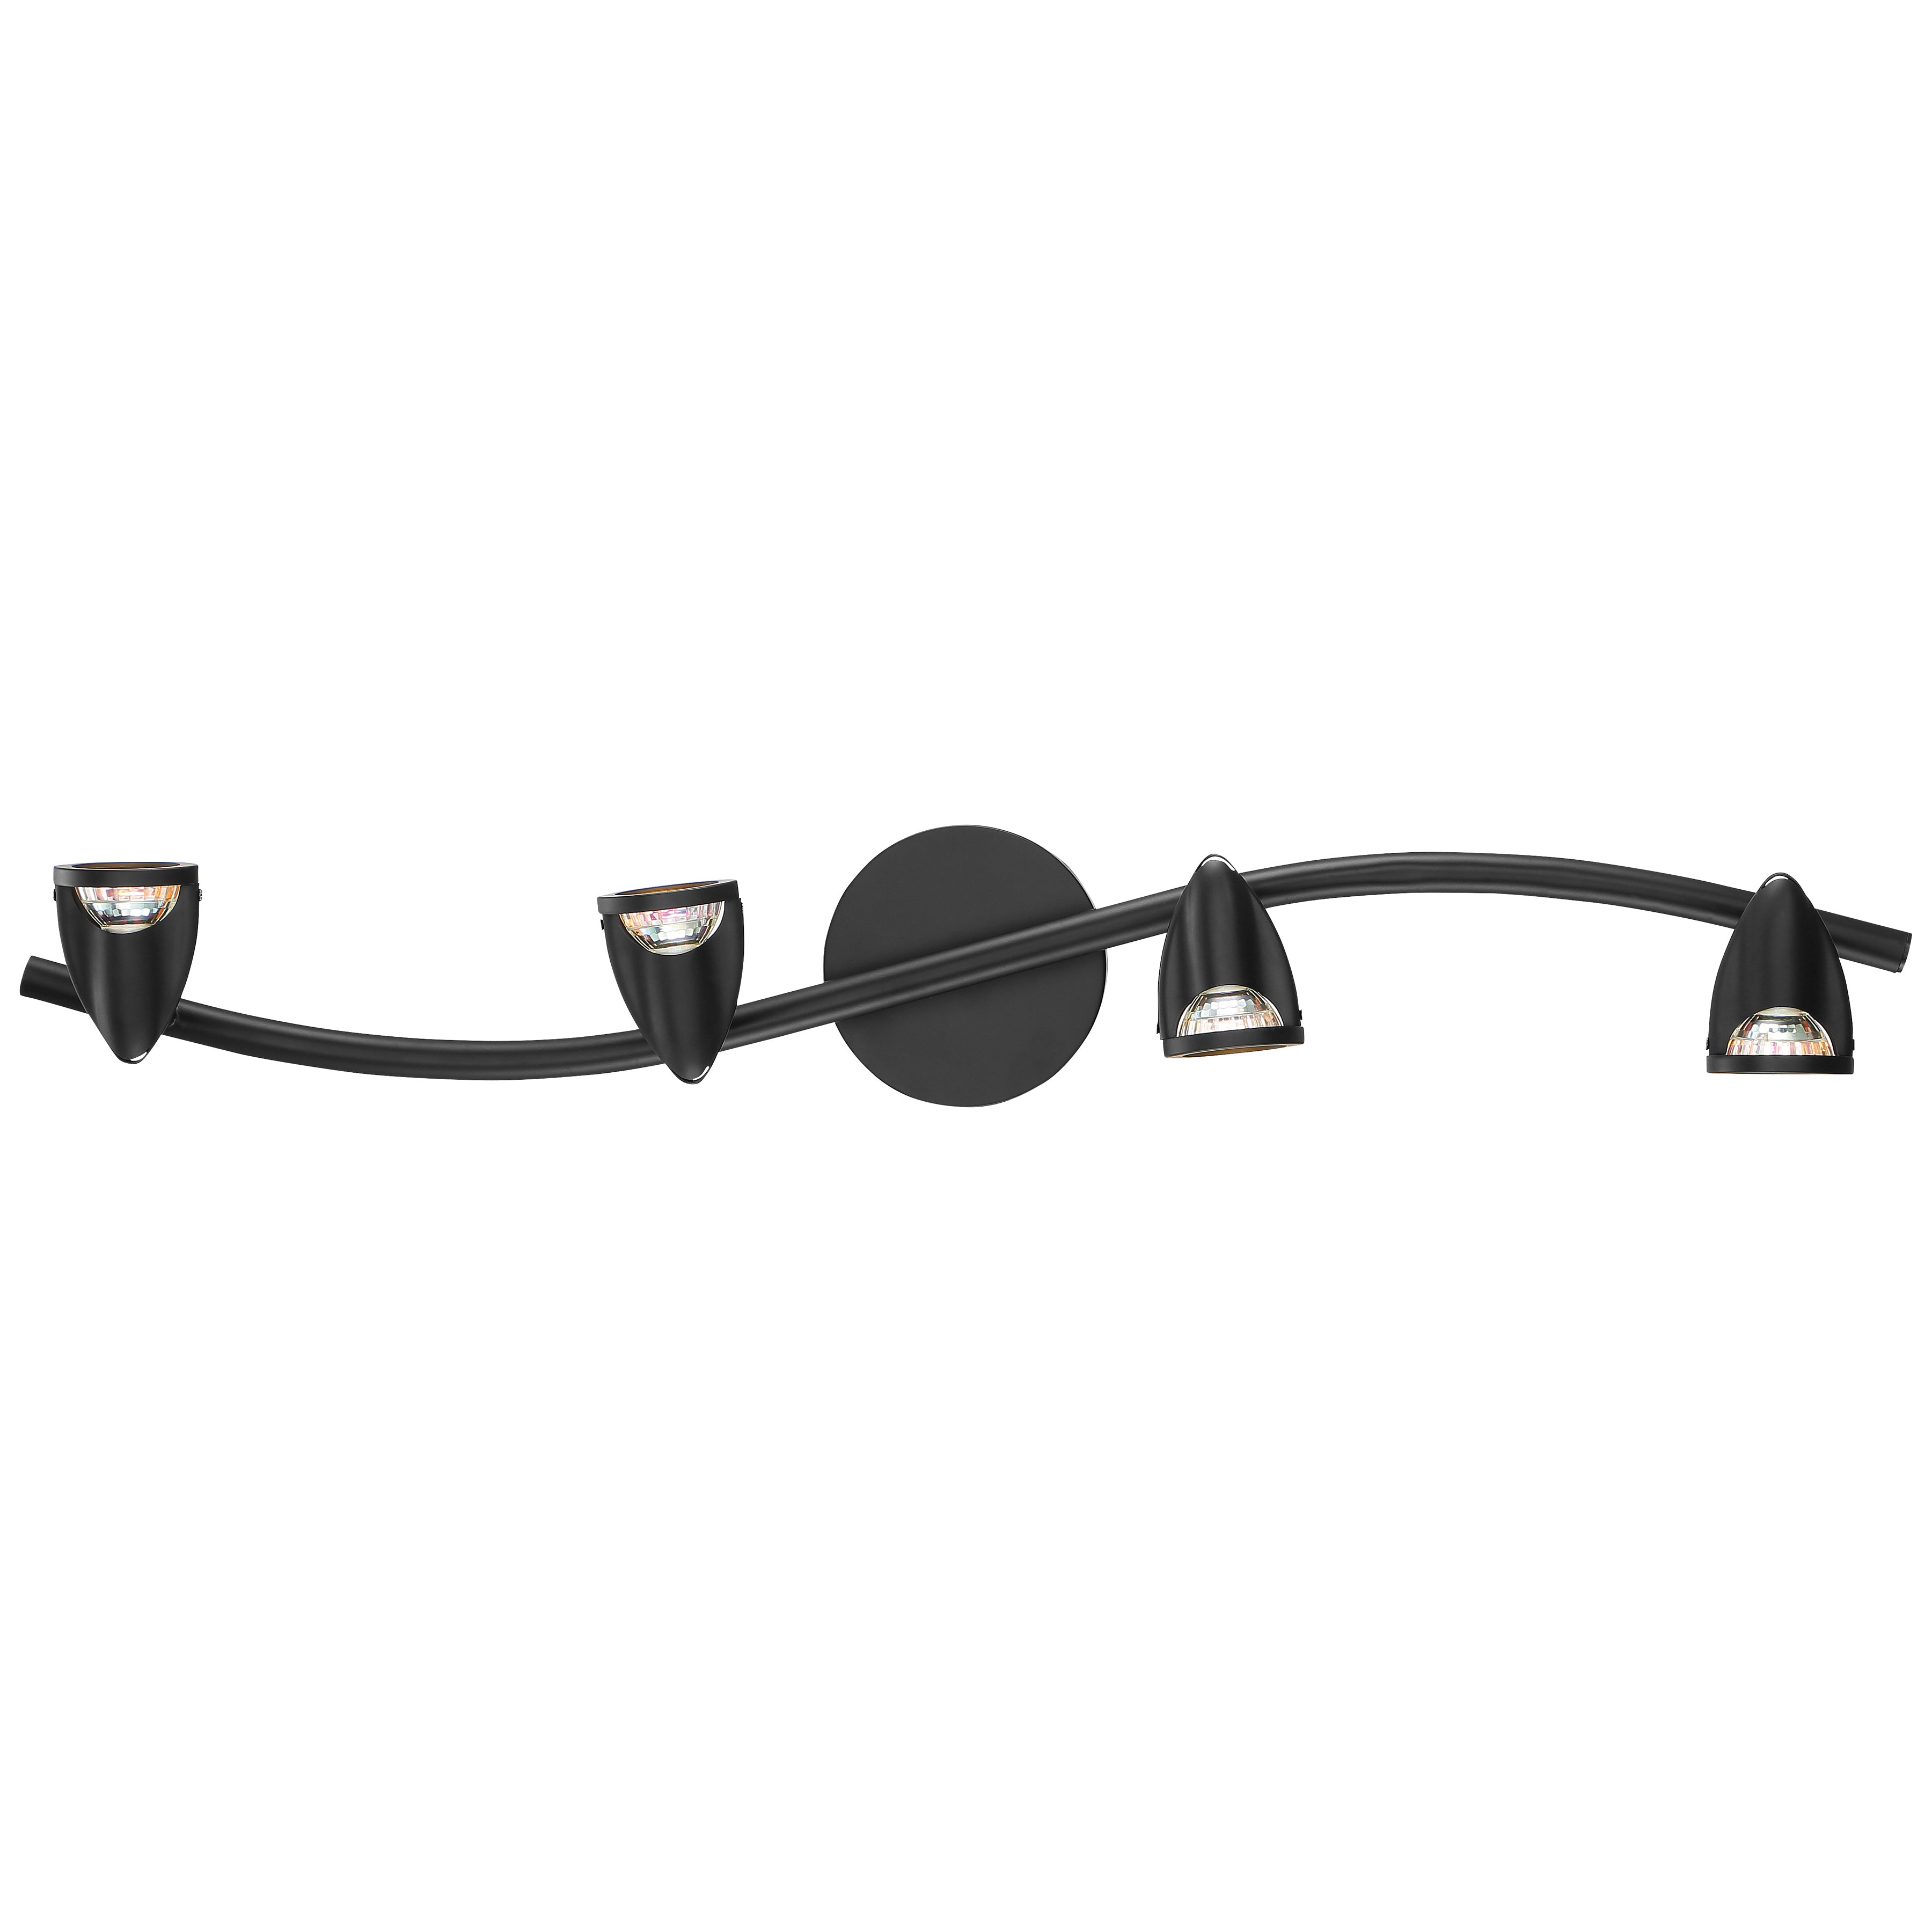 Cobra 4 Light Adjustable LED Track Light Fixture, Black